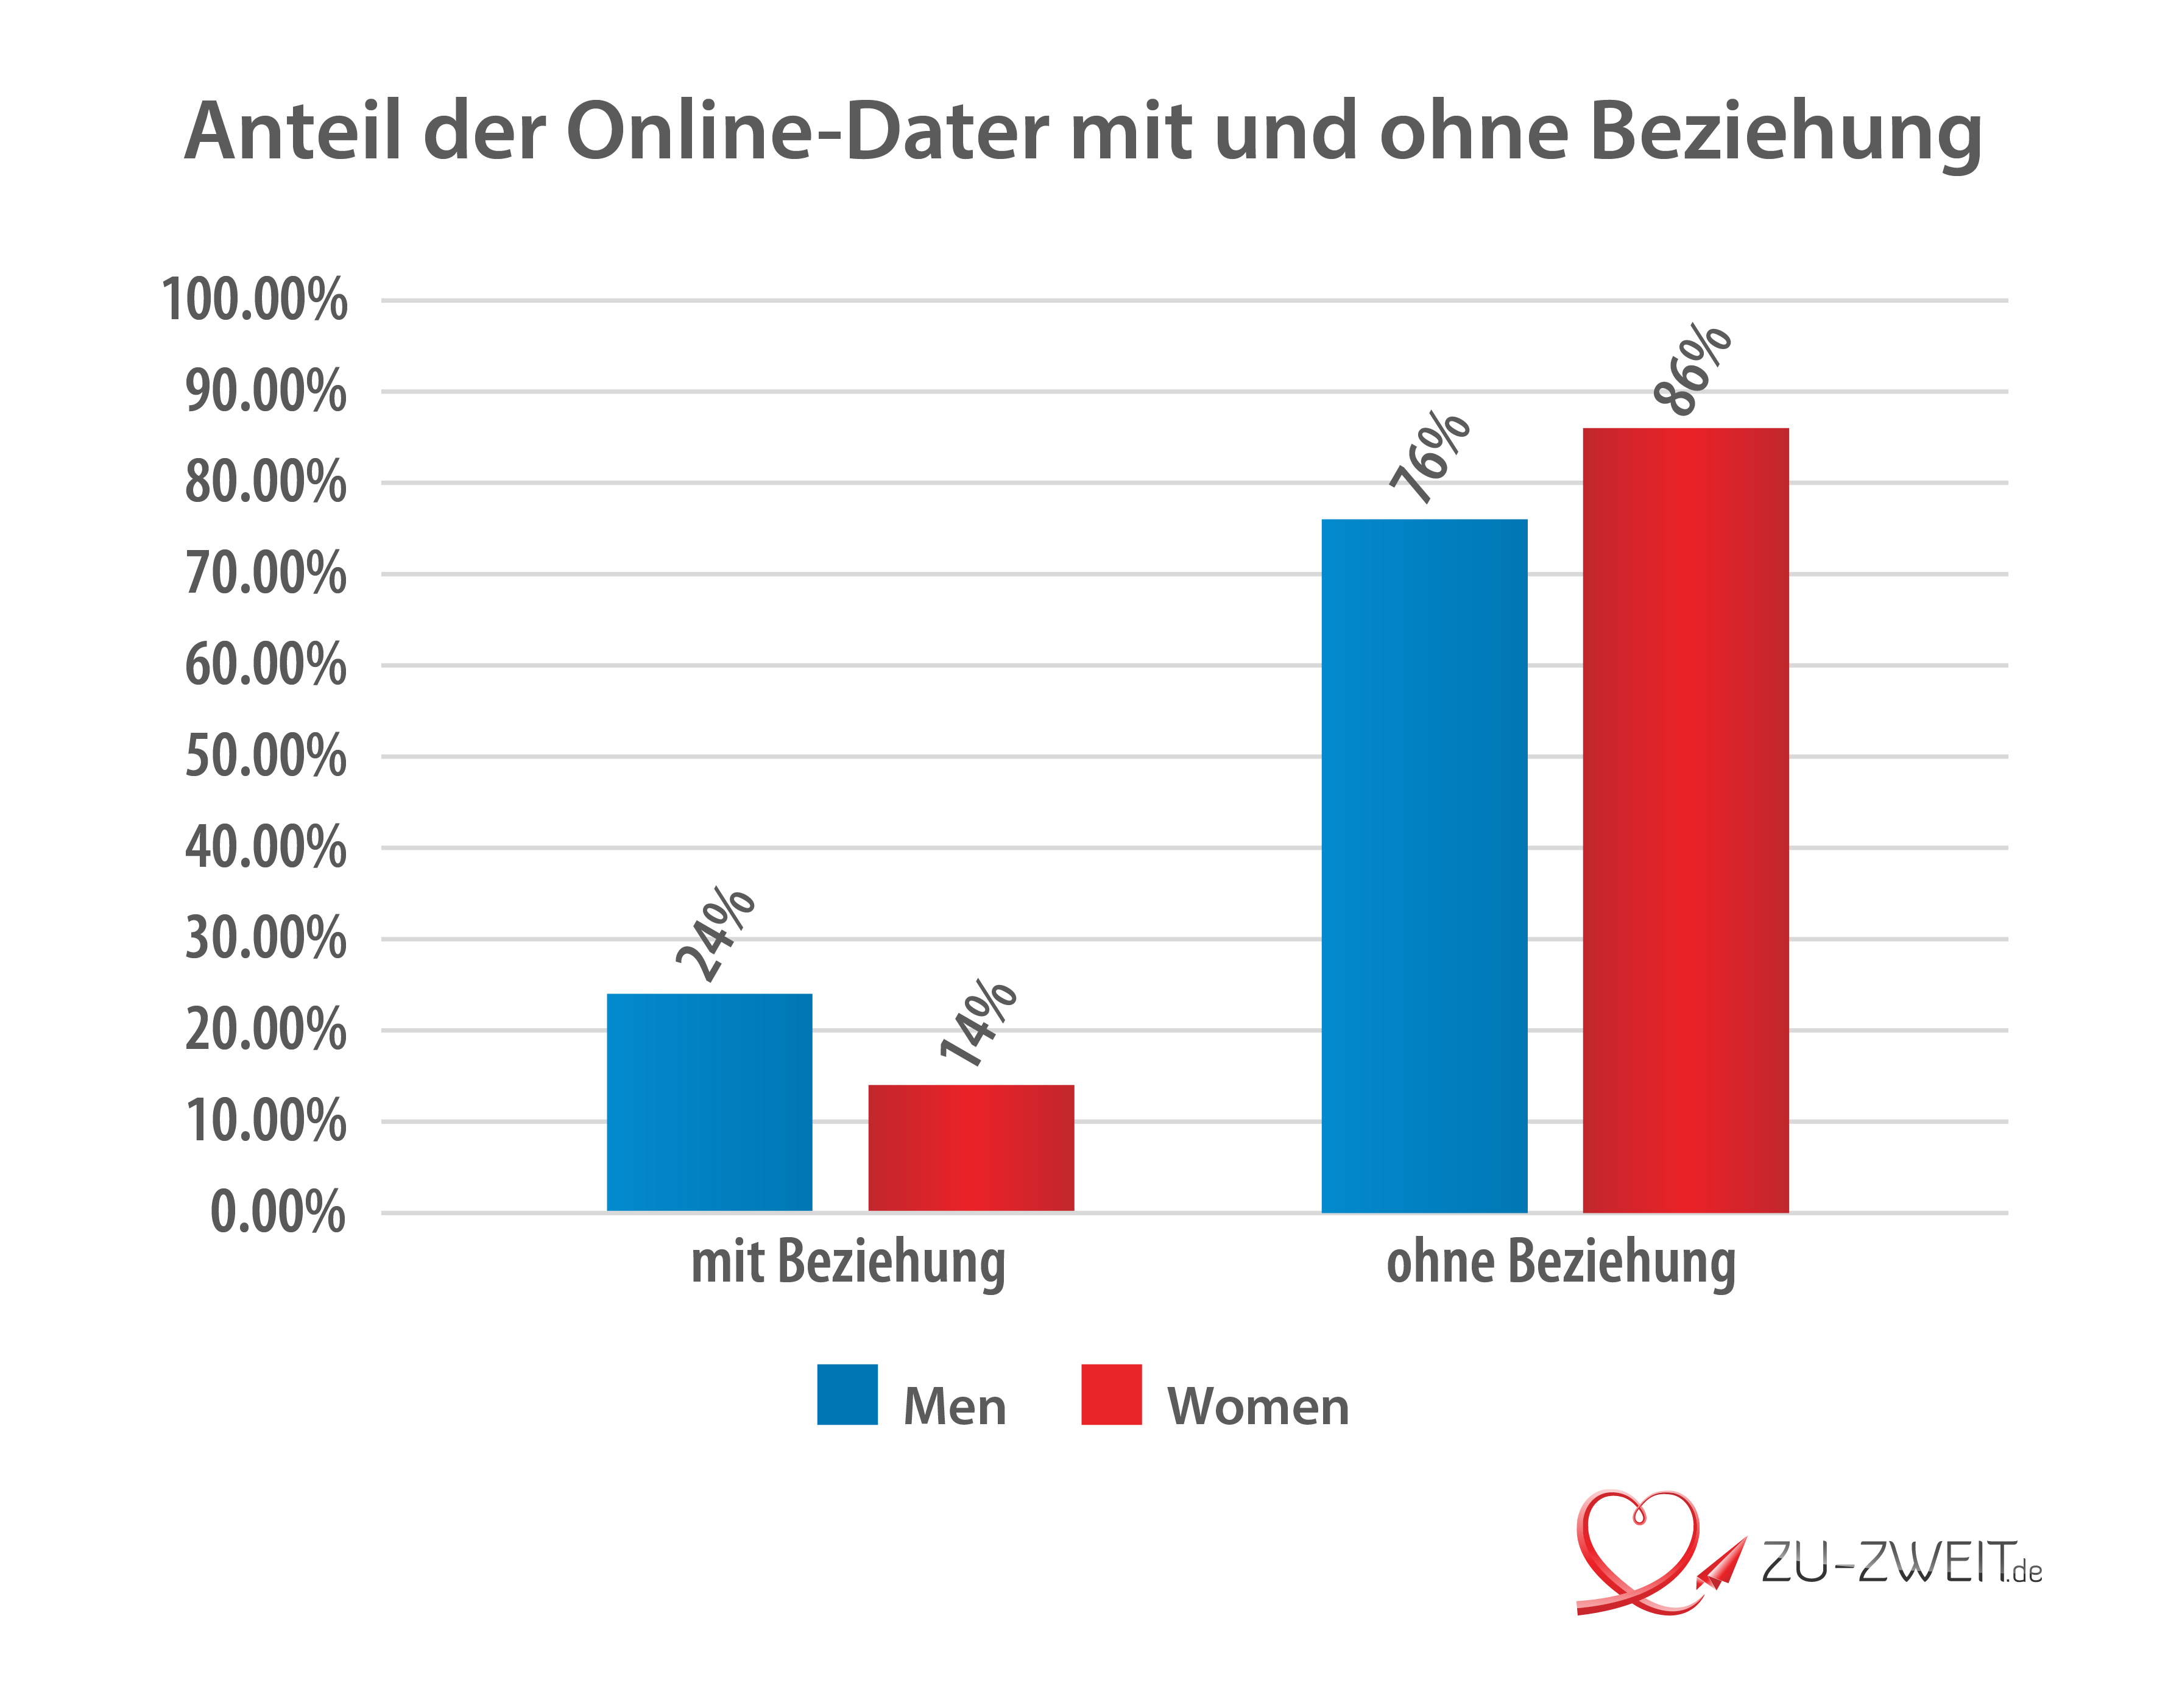 Online dating Statistik Österreich